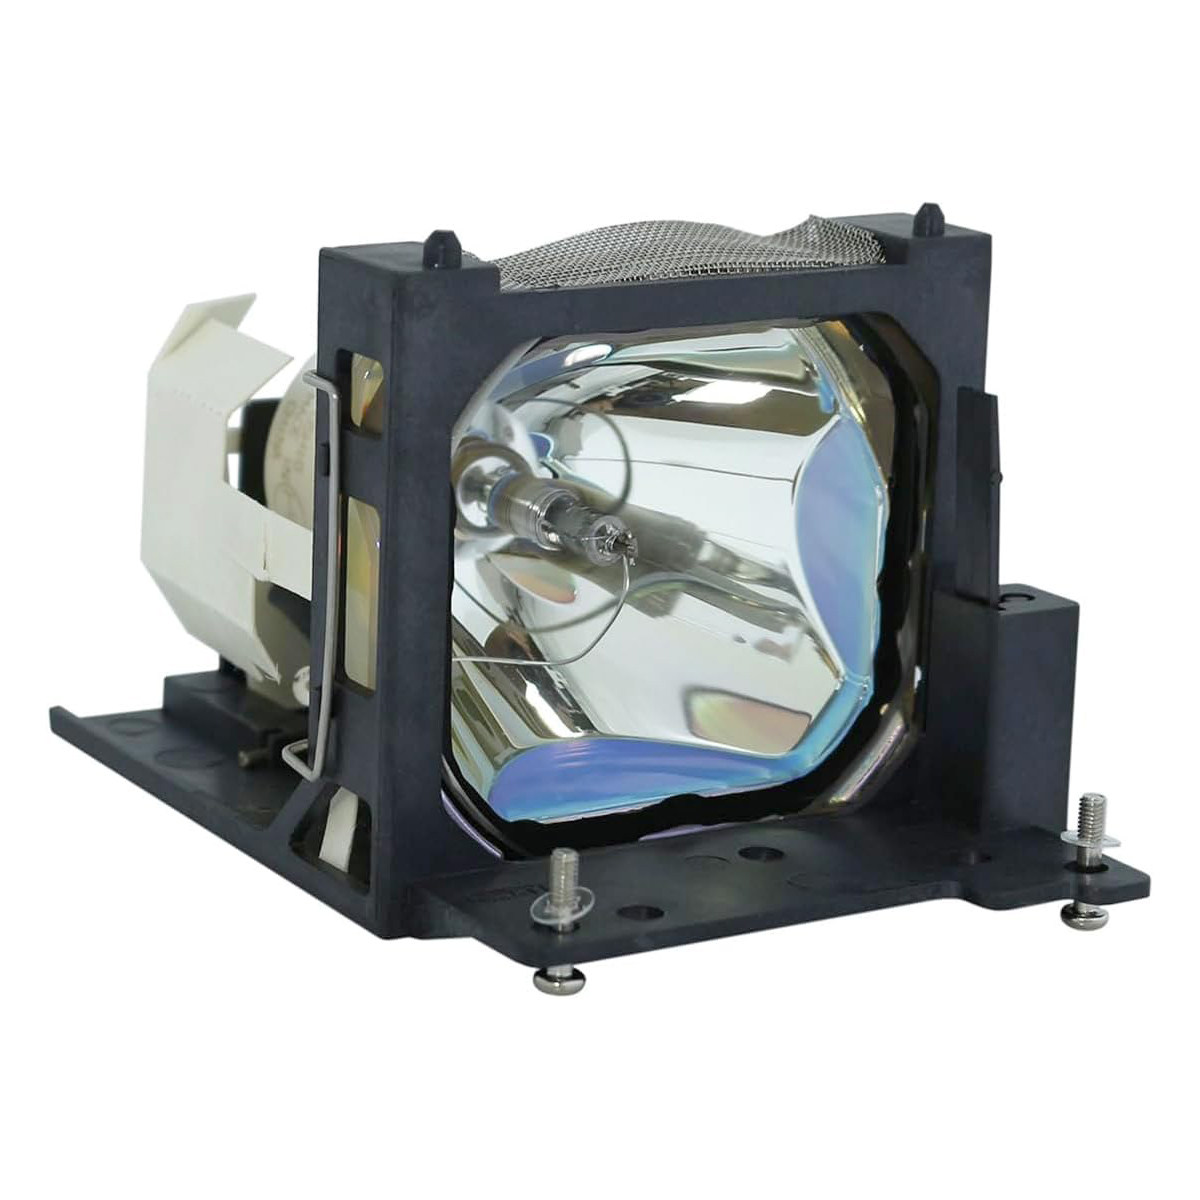 Replacement Projector lamp RLU-150-001 For VIEWSONIC PJ500 PJ500-1 PJ500-2